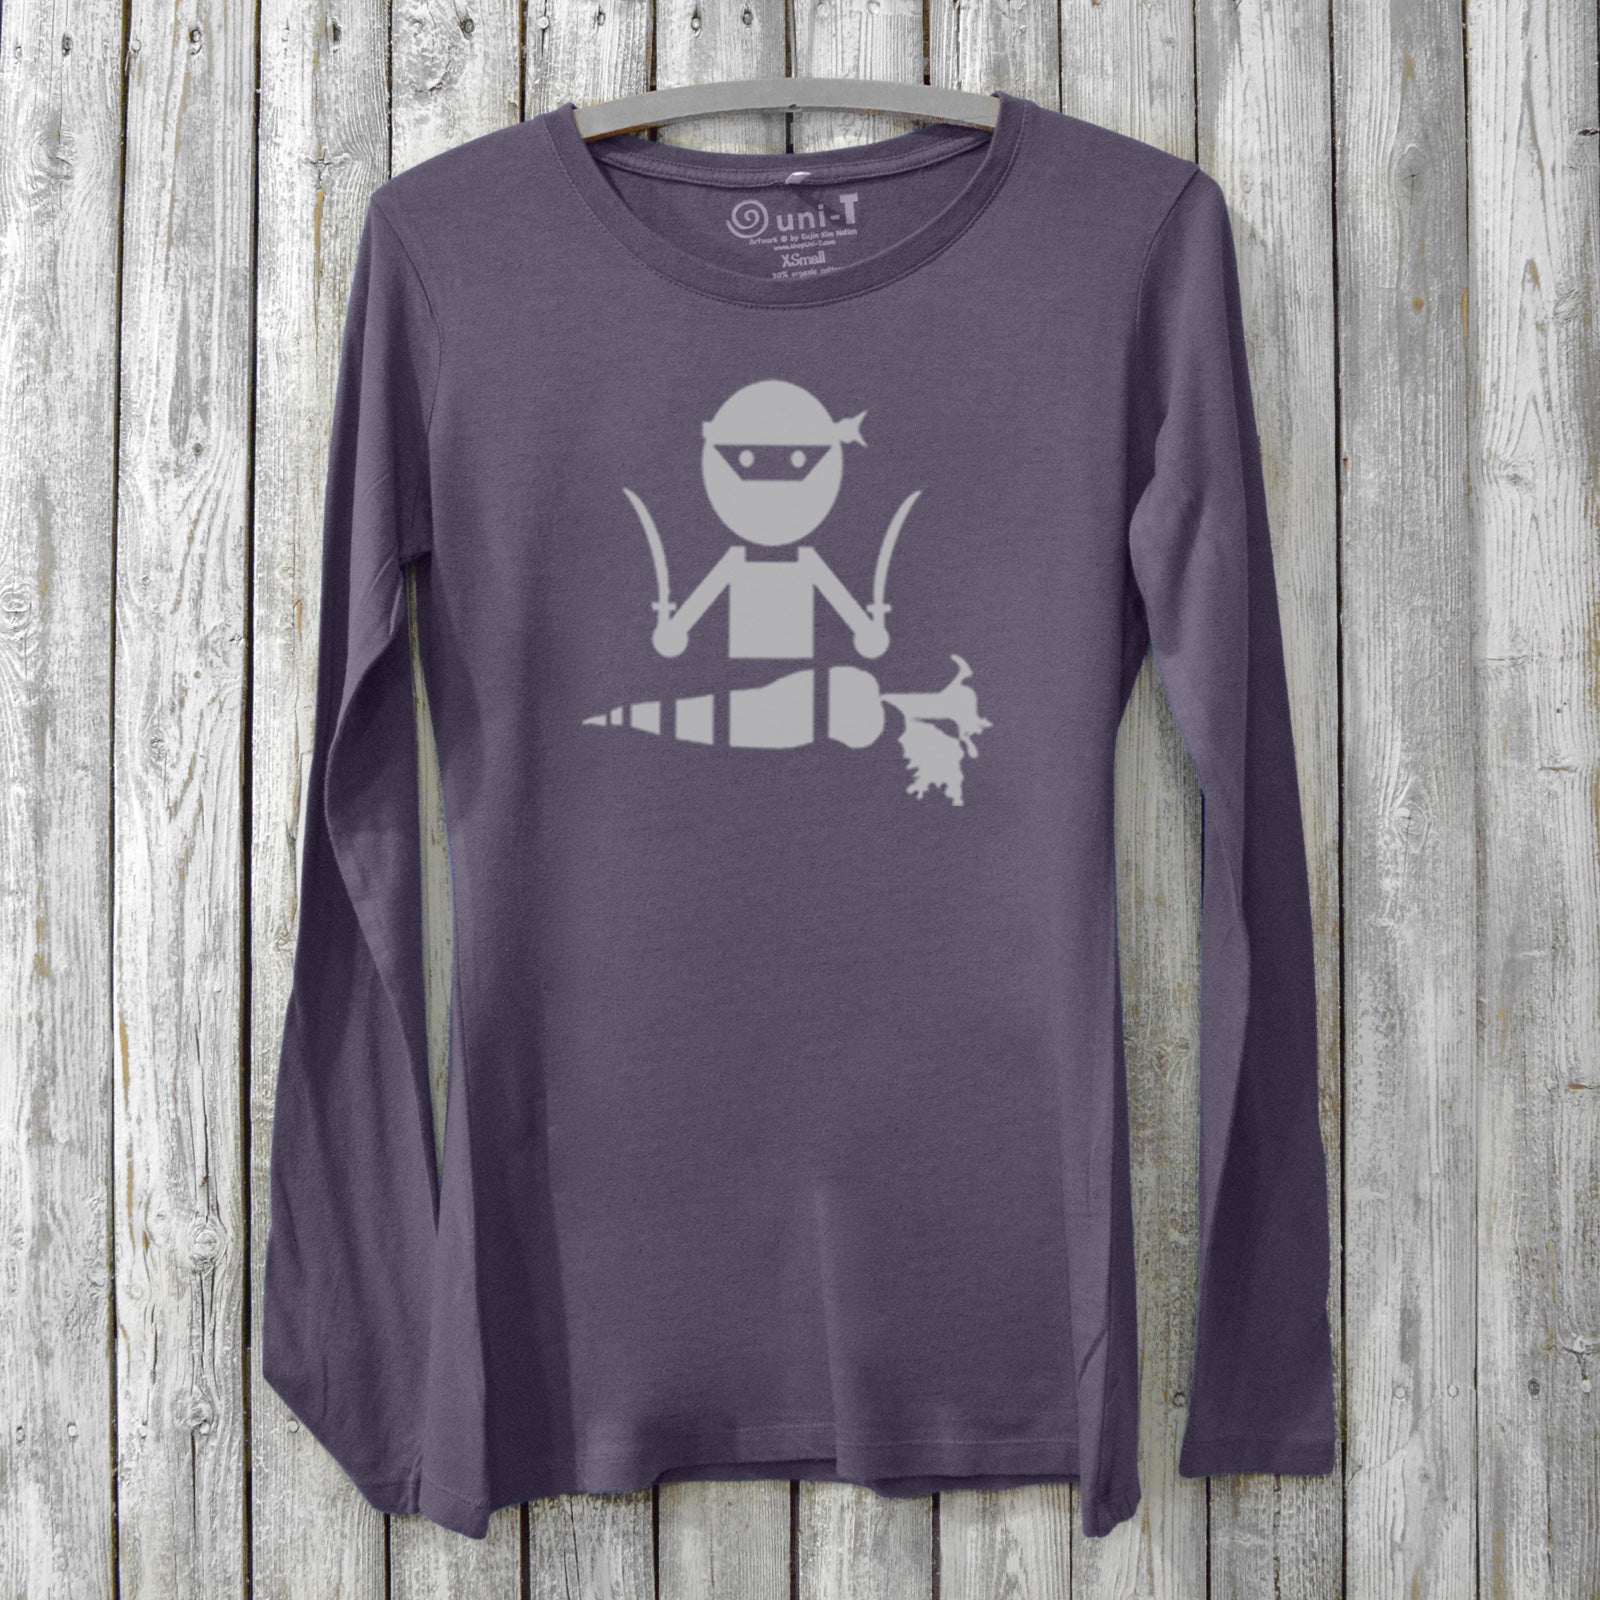 Veggie Ninja Long Sleeve T-shirt for Women Uni-T